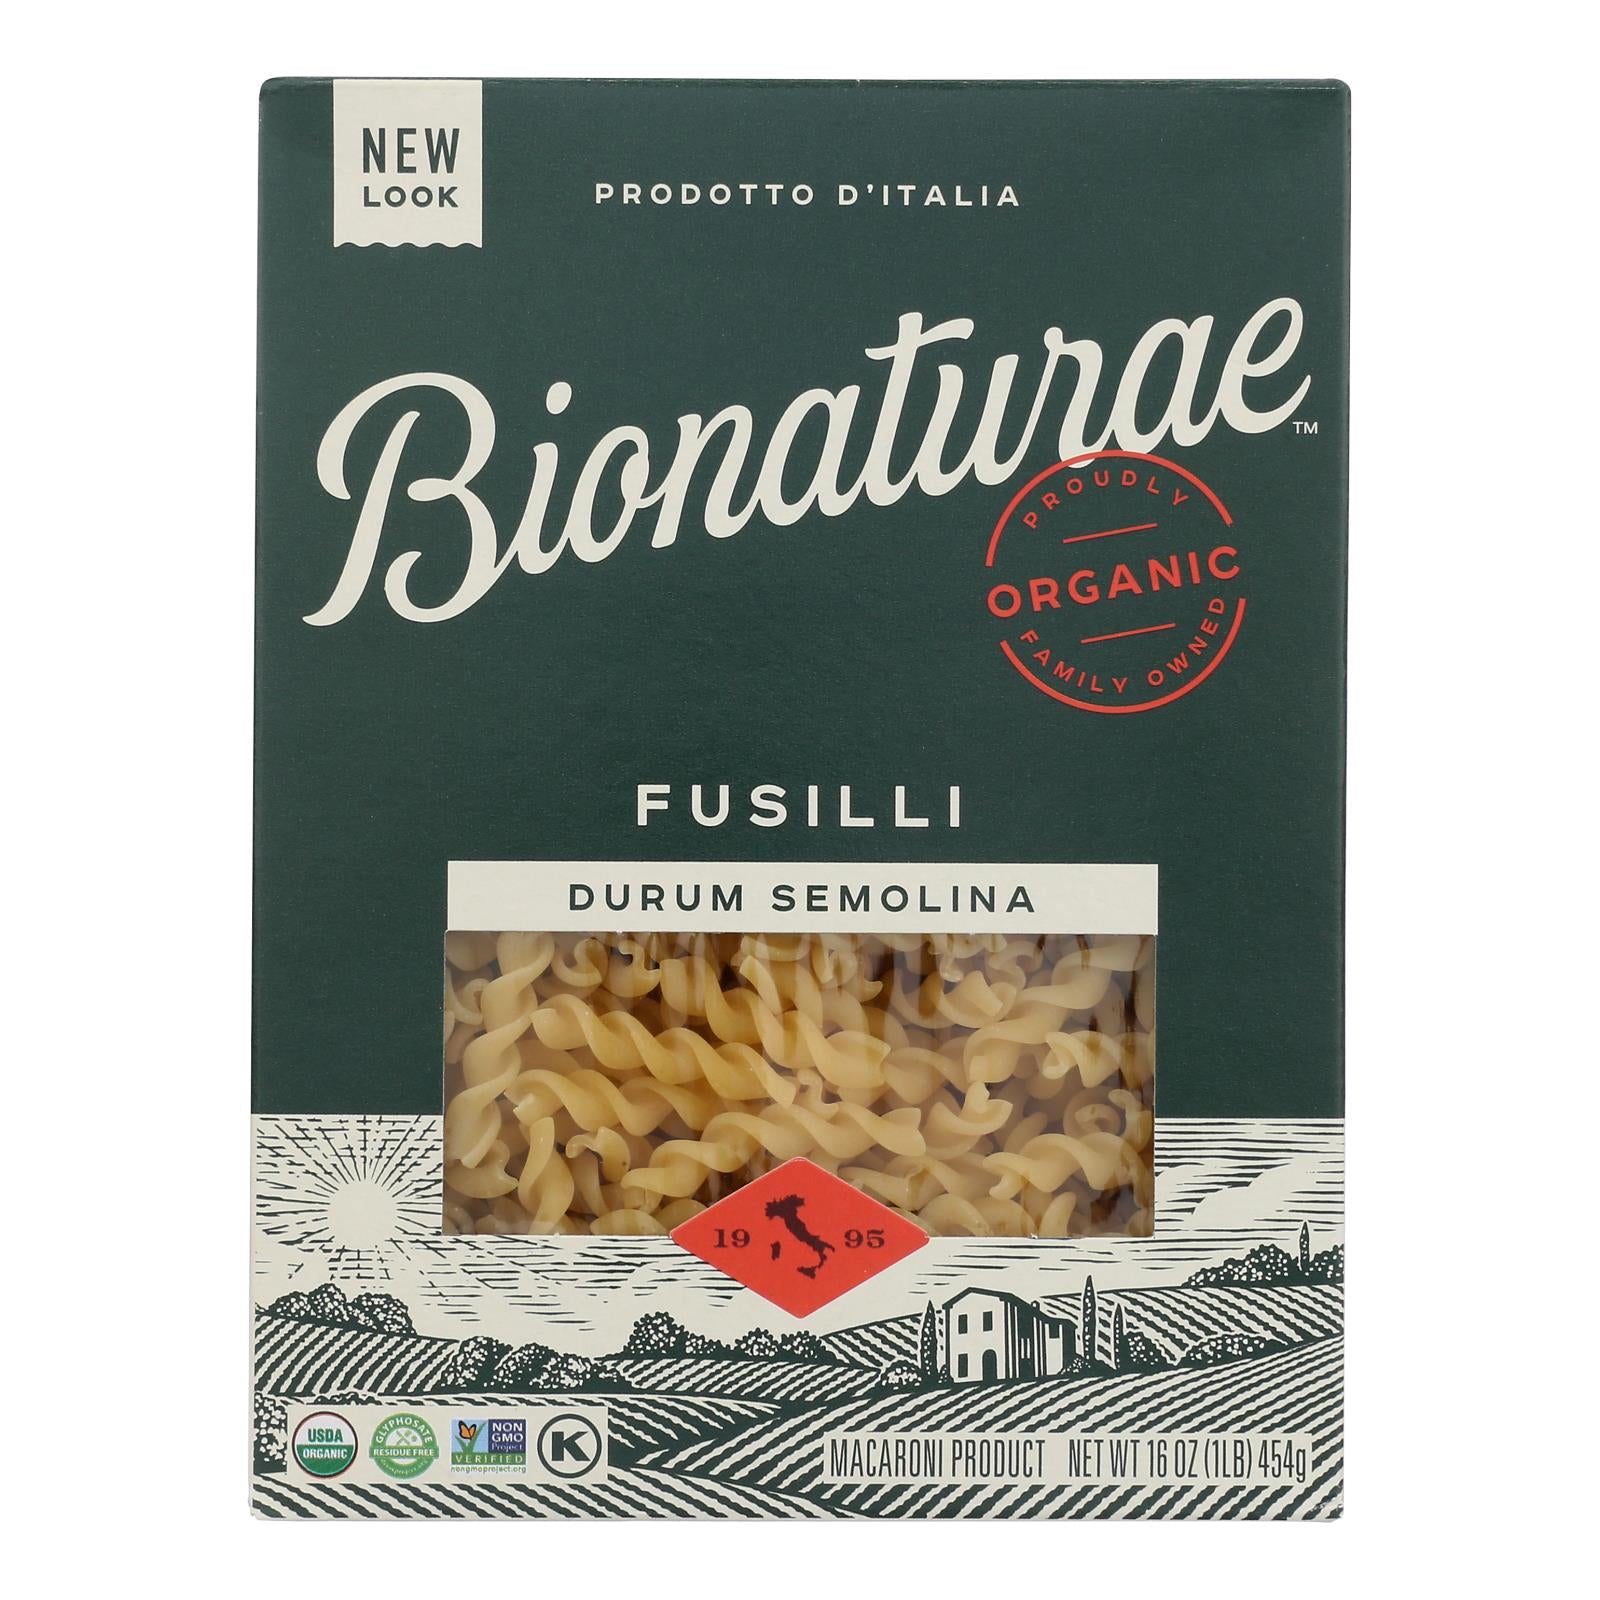 Bionaturae Pasta - Organic - 100 Percent Durum Semolina - Fusilli - 16 Oz - Case Of 12